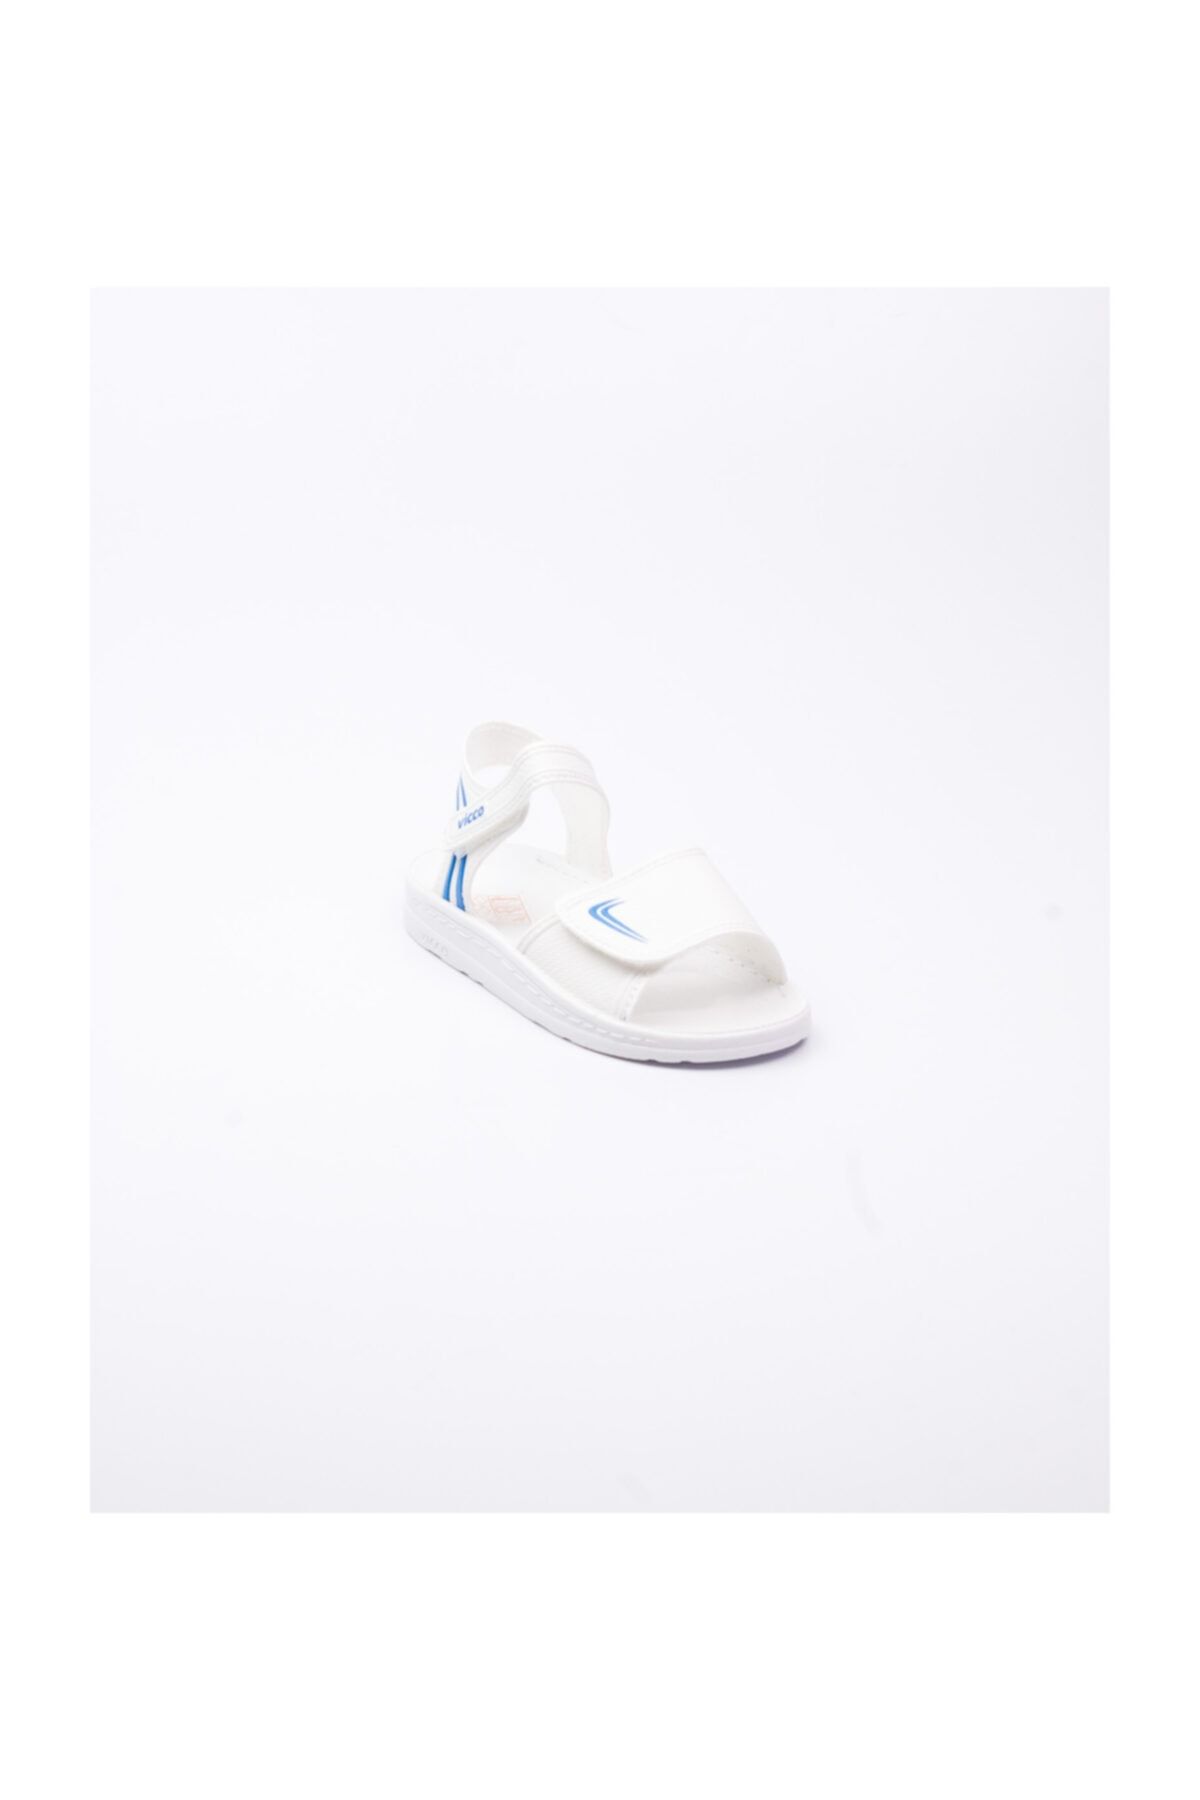 Vicco Bebek Sandalet 21 25 Beyaz 23 332 By 301 Beyaz Fiyati Yorumlari Trendyol